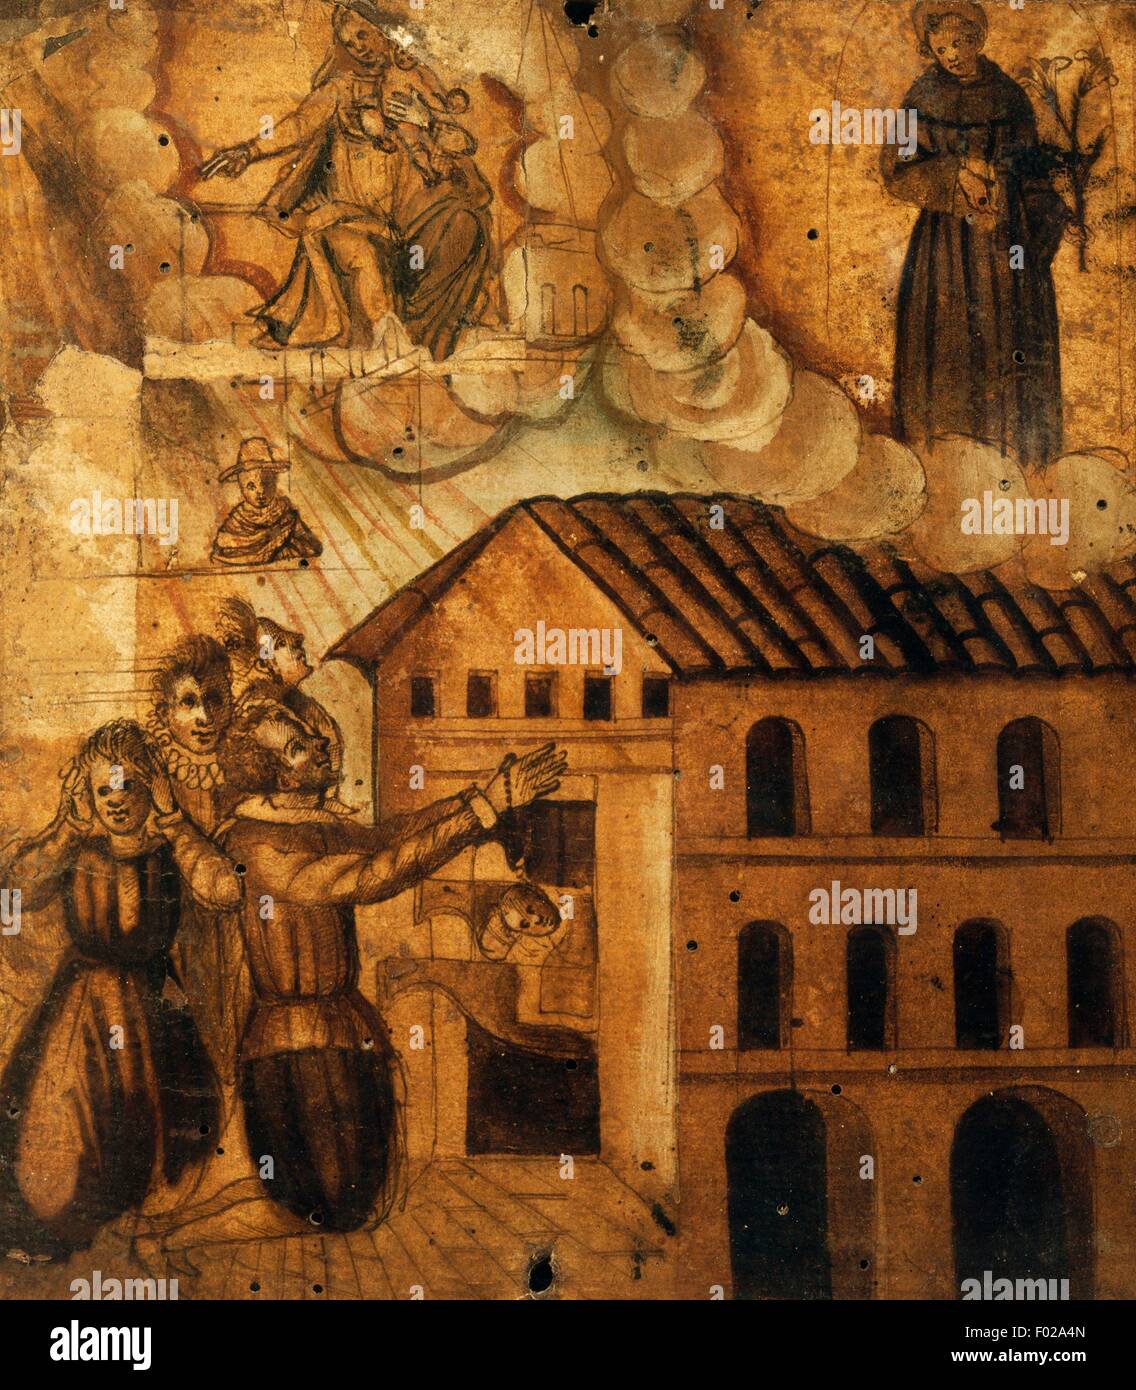 Fidèles en prière devant une maison en feu, ex voto, Italie, 17e siècle. Banque D'Images